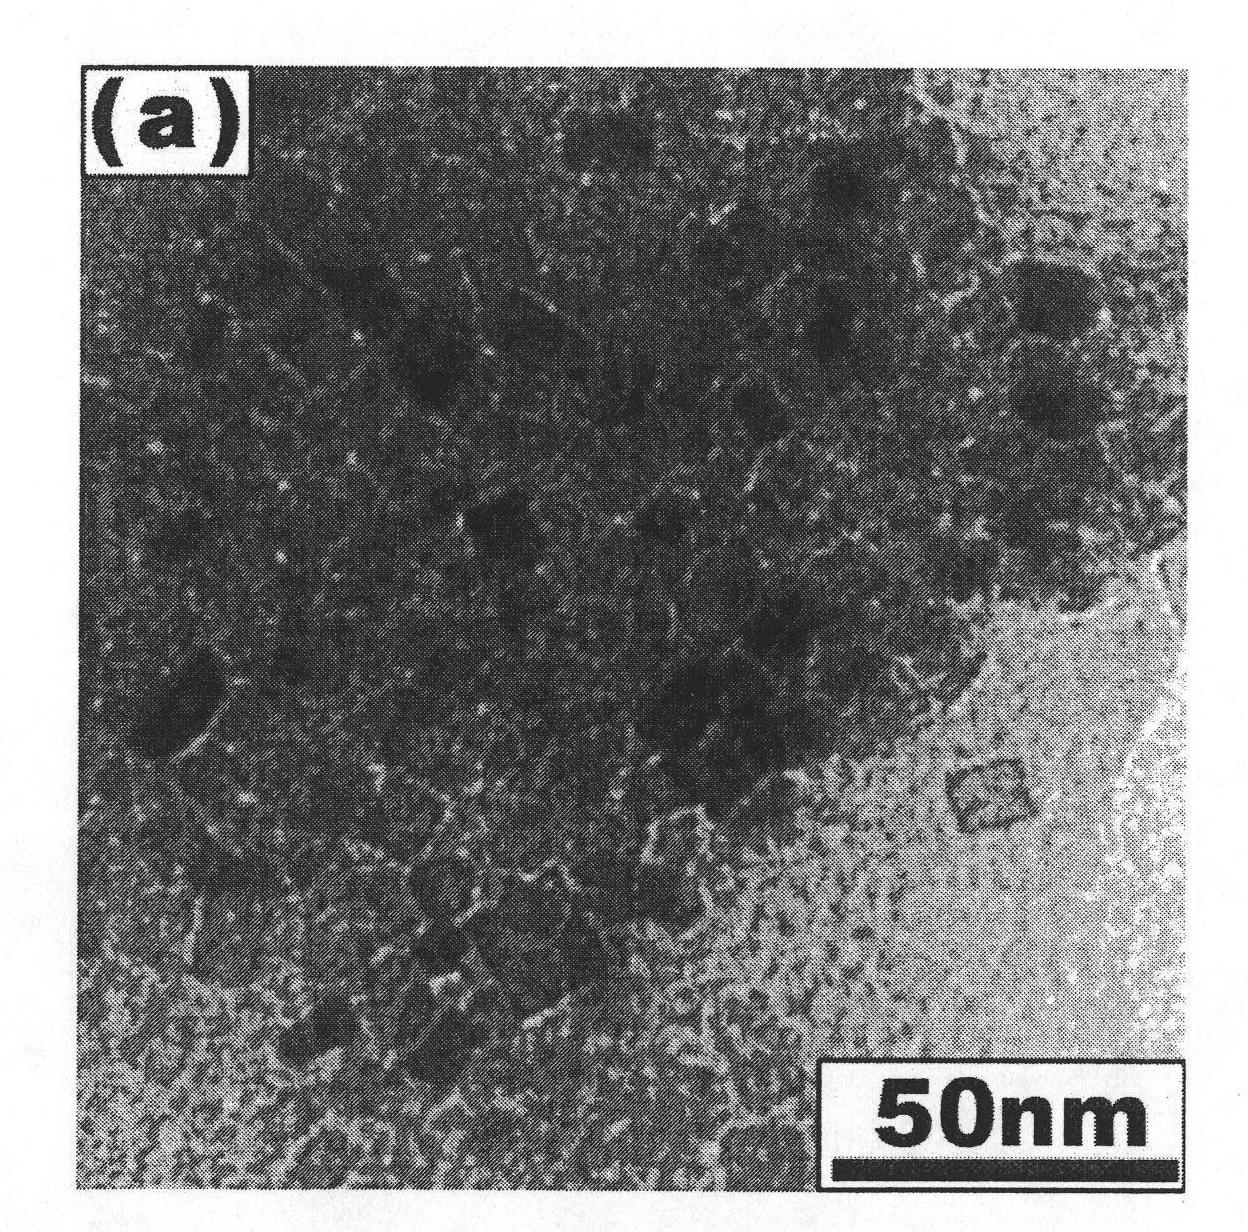 Method for preparing nanometer barium-strontium titanate powder